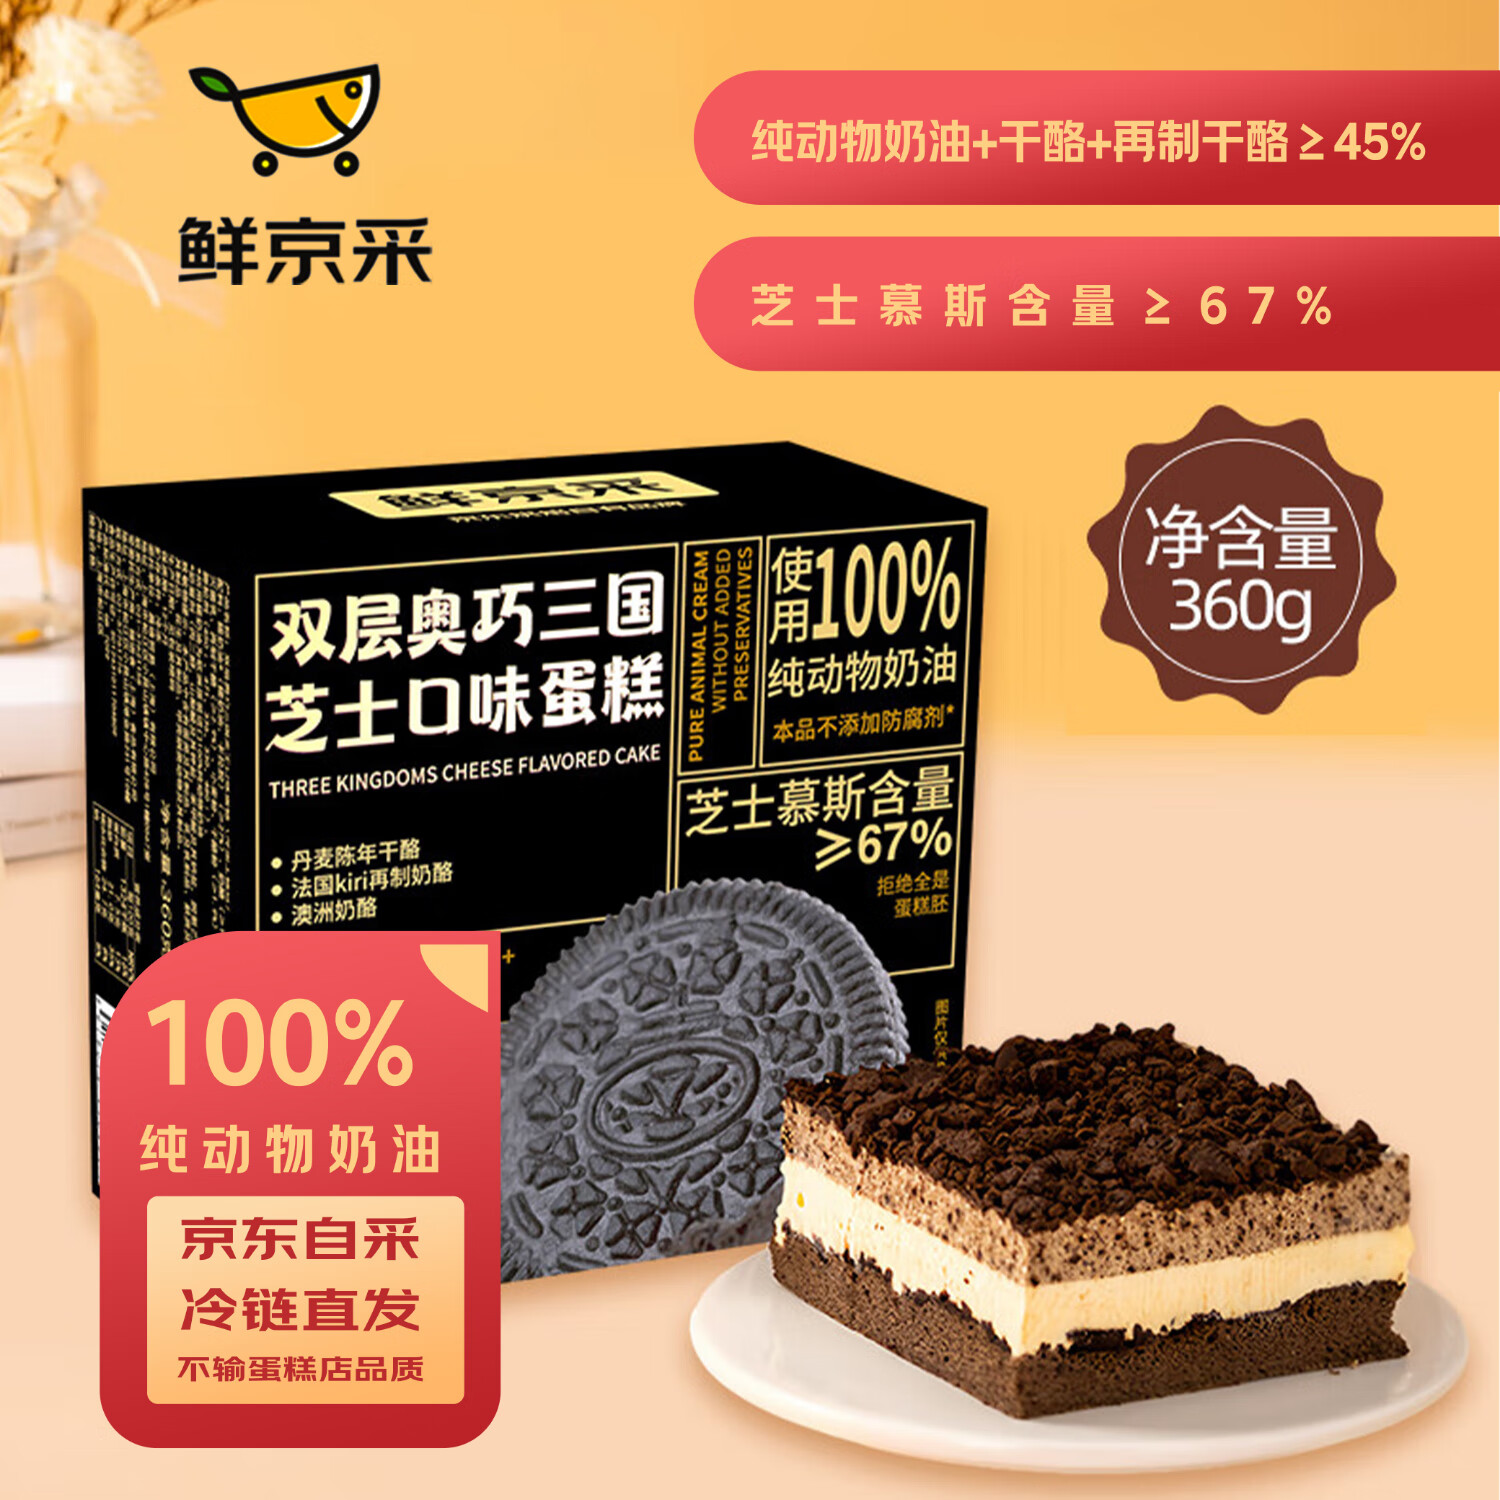 鲜京采 双层奥巧三国芝士口味蛋糕360g 43.95元